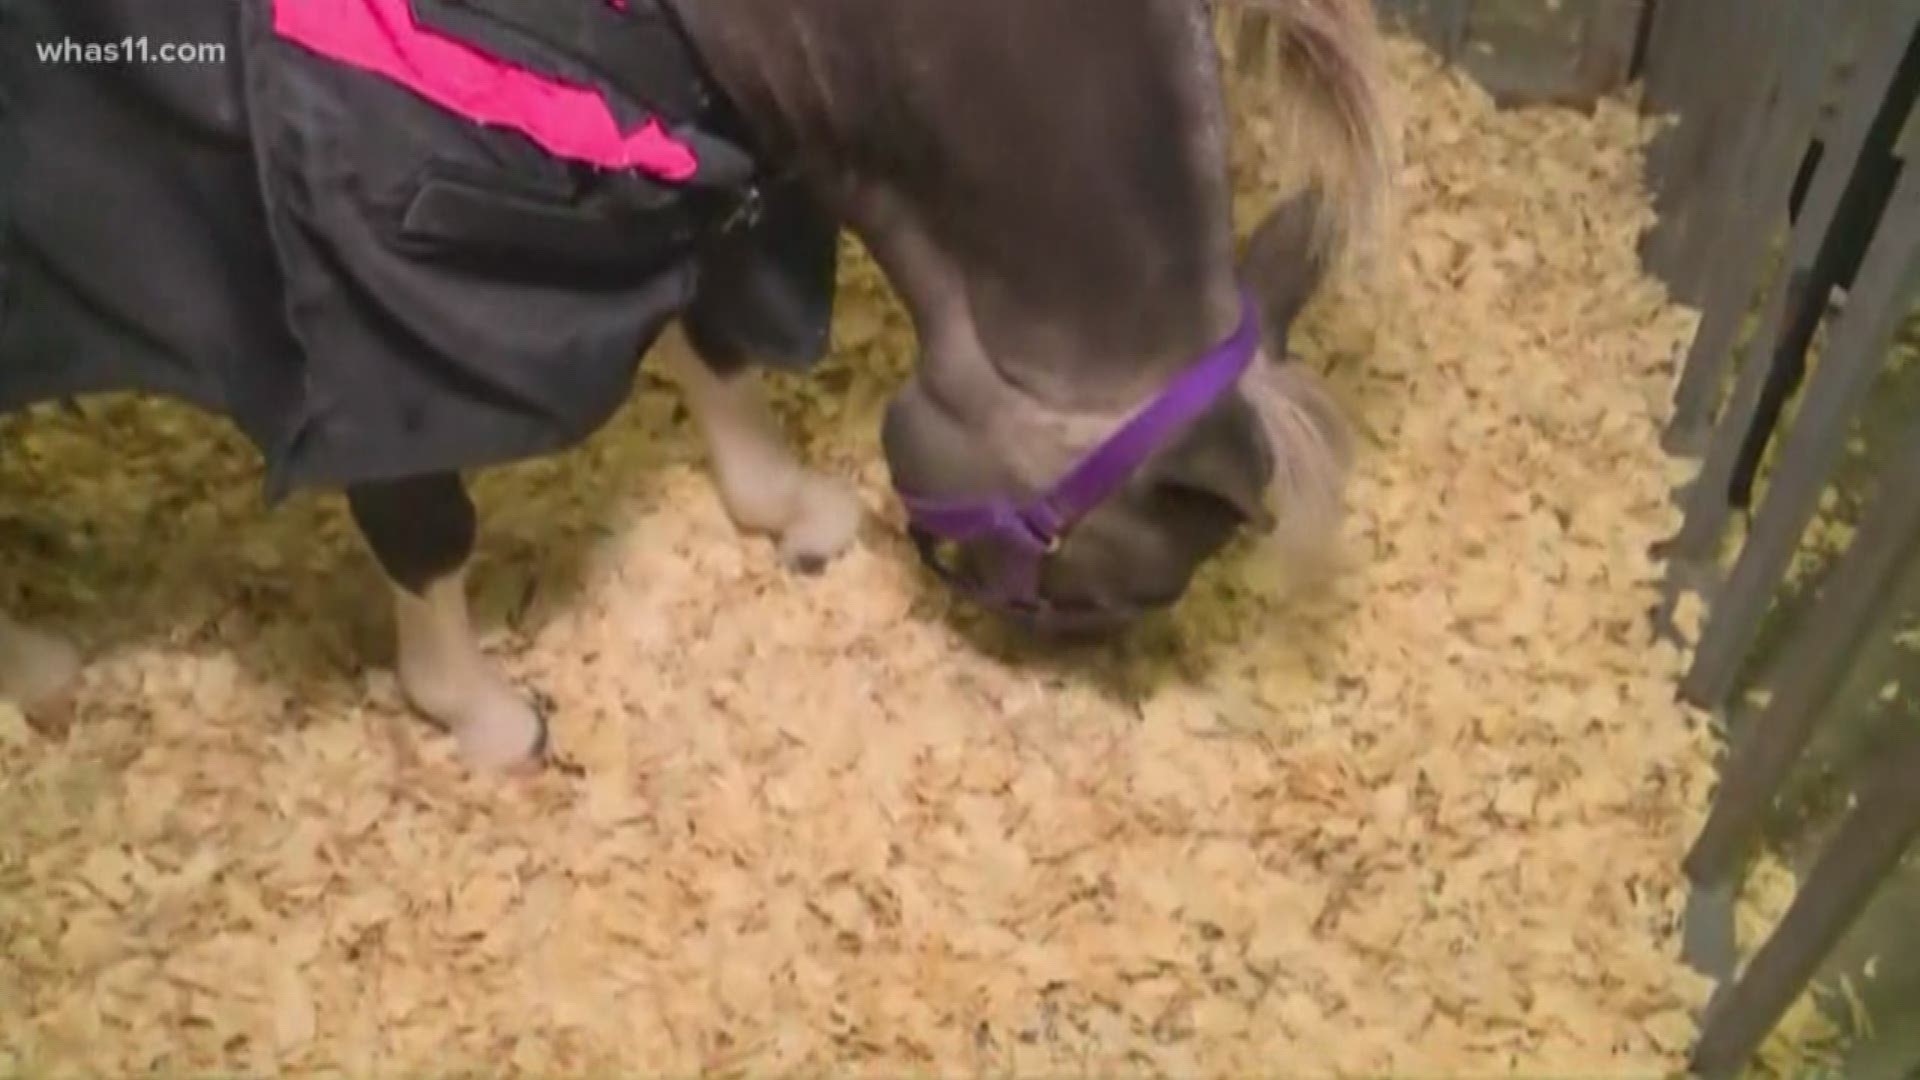 Kaitlynn Fish gets to meet a precious miniature horse at the Kentucky State Fair